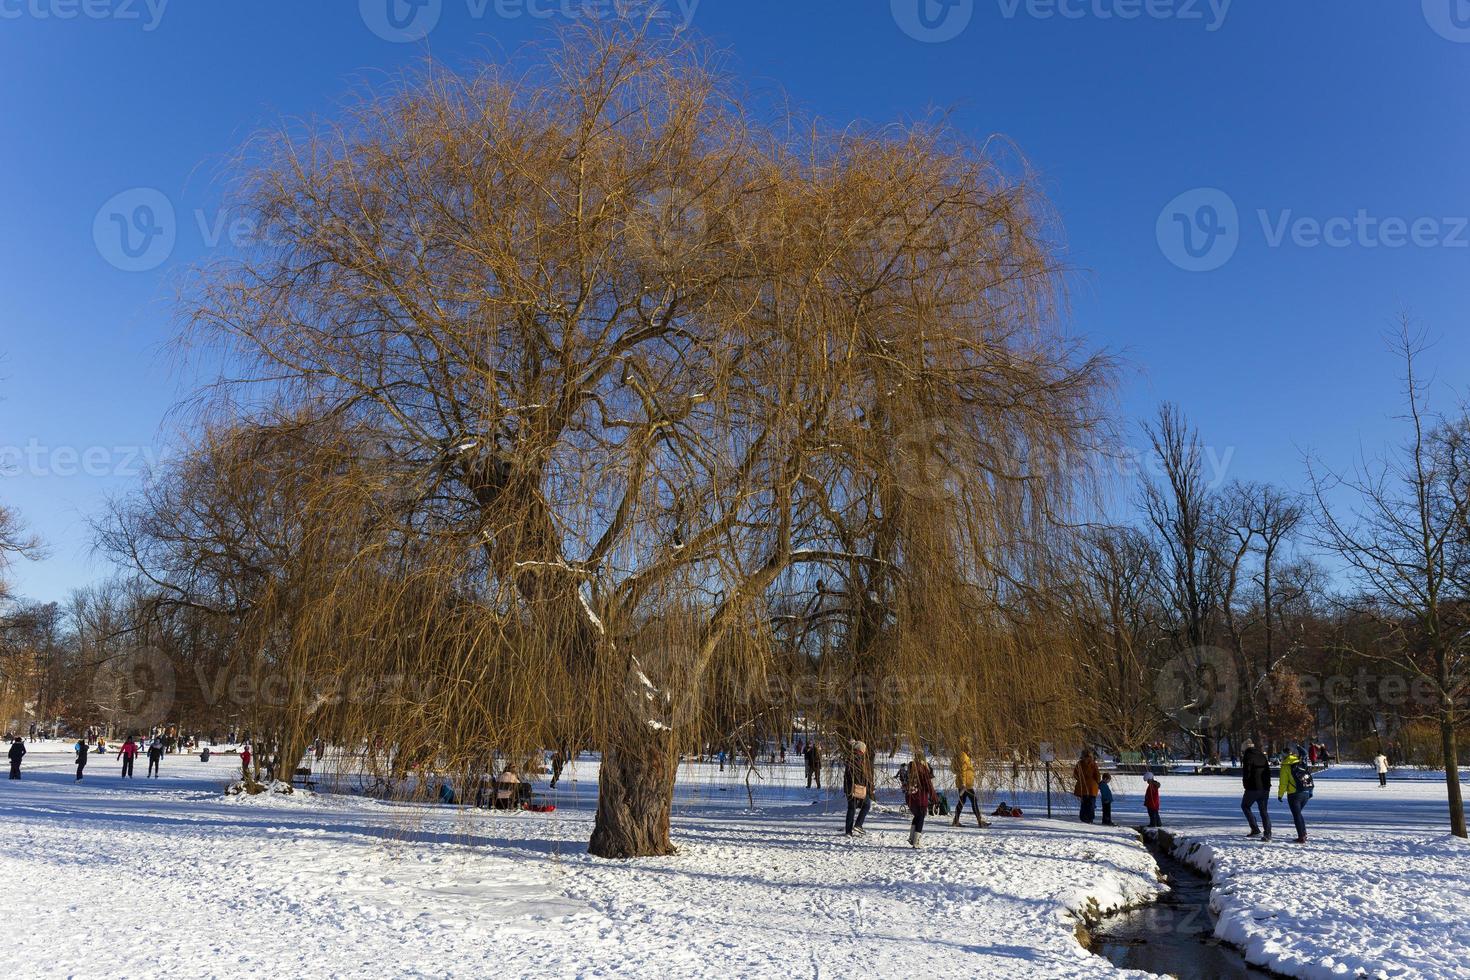 der größte park in prag stromovka im verschneiten winter foto